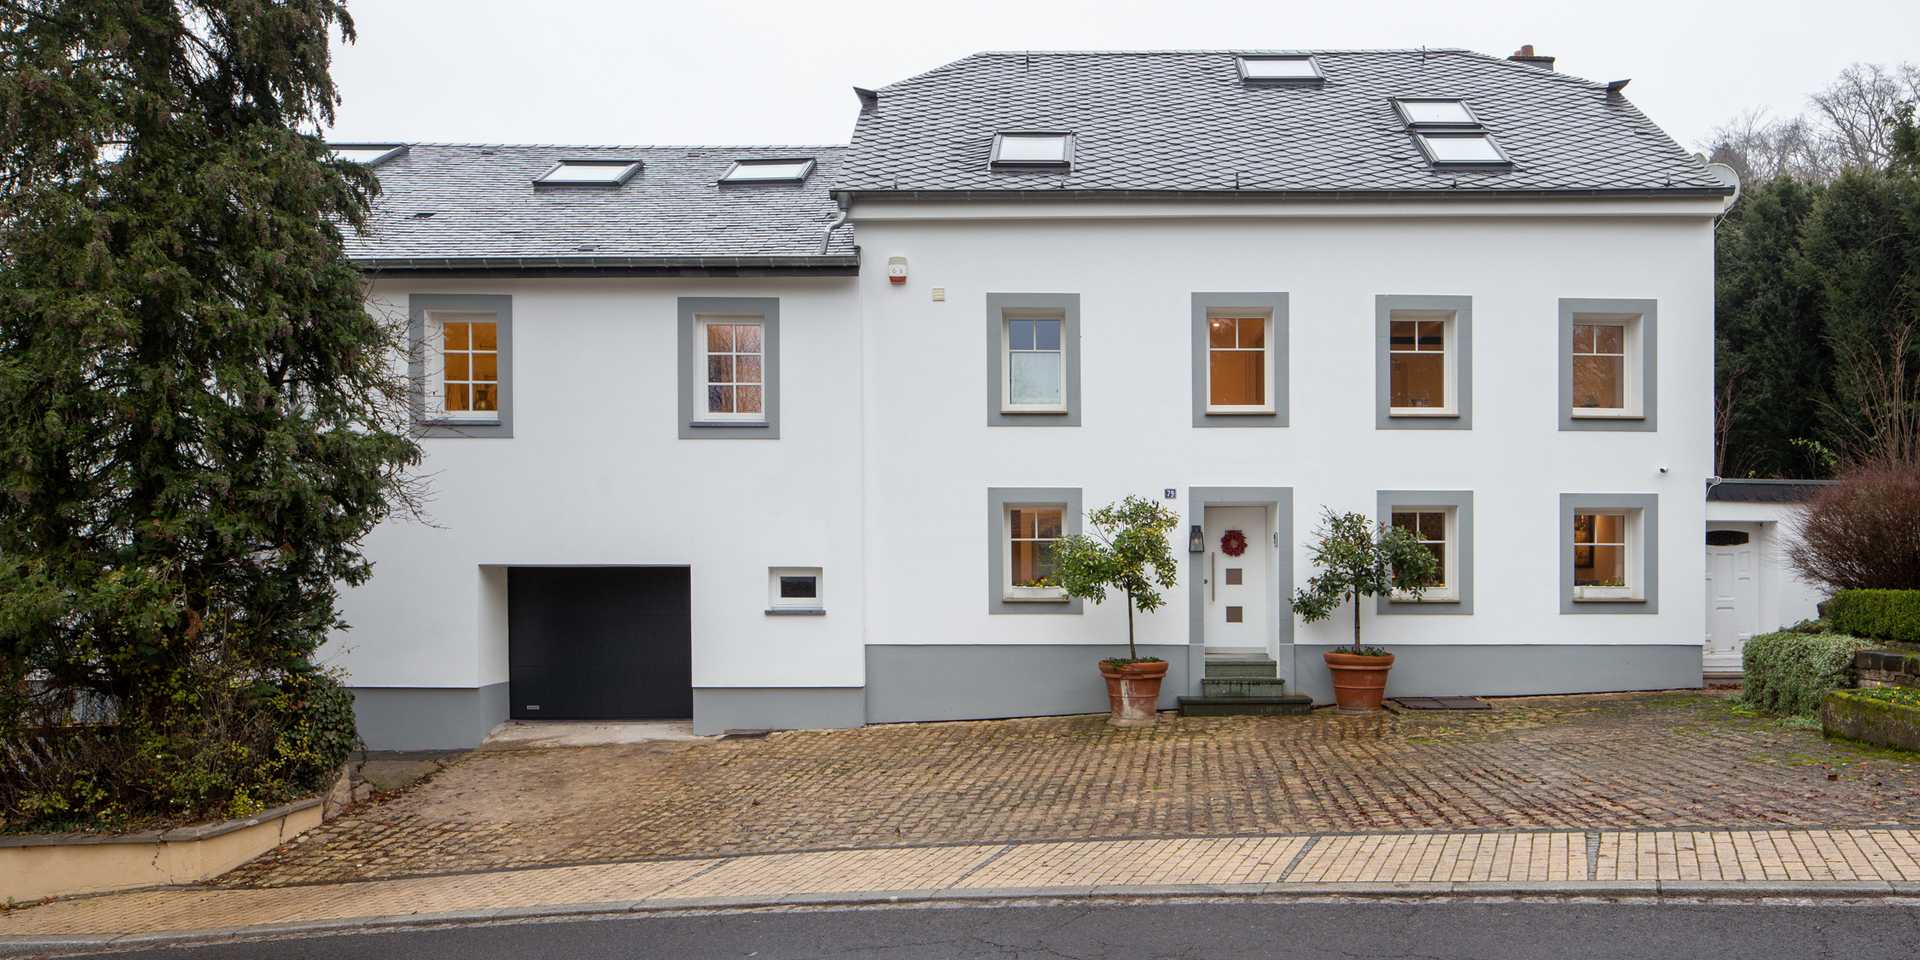 Maison contemporaine esprit loft réalisée par un architecte à Bruxelles